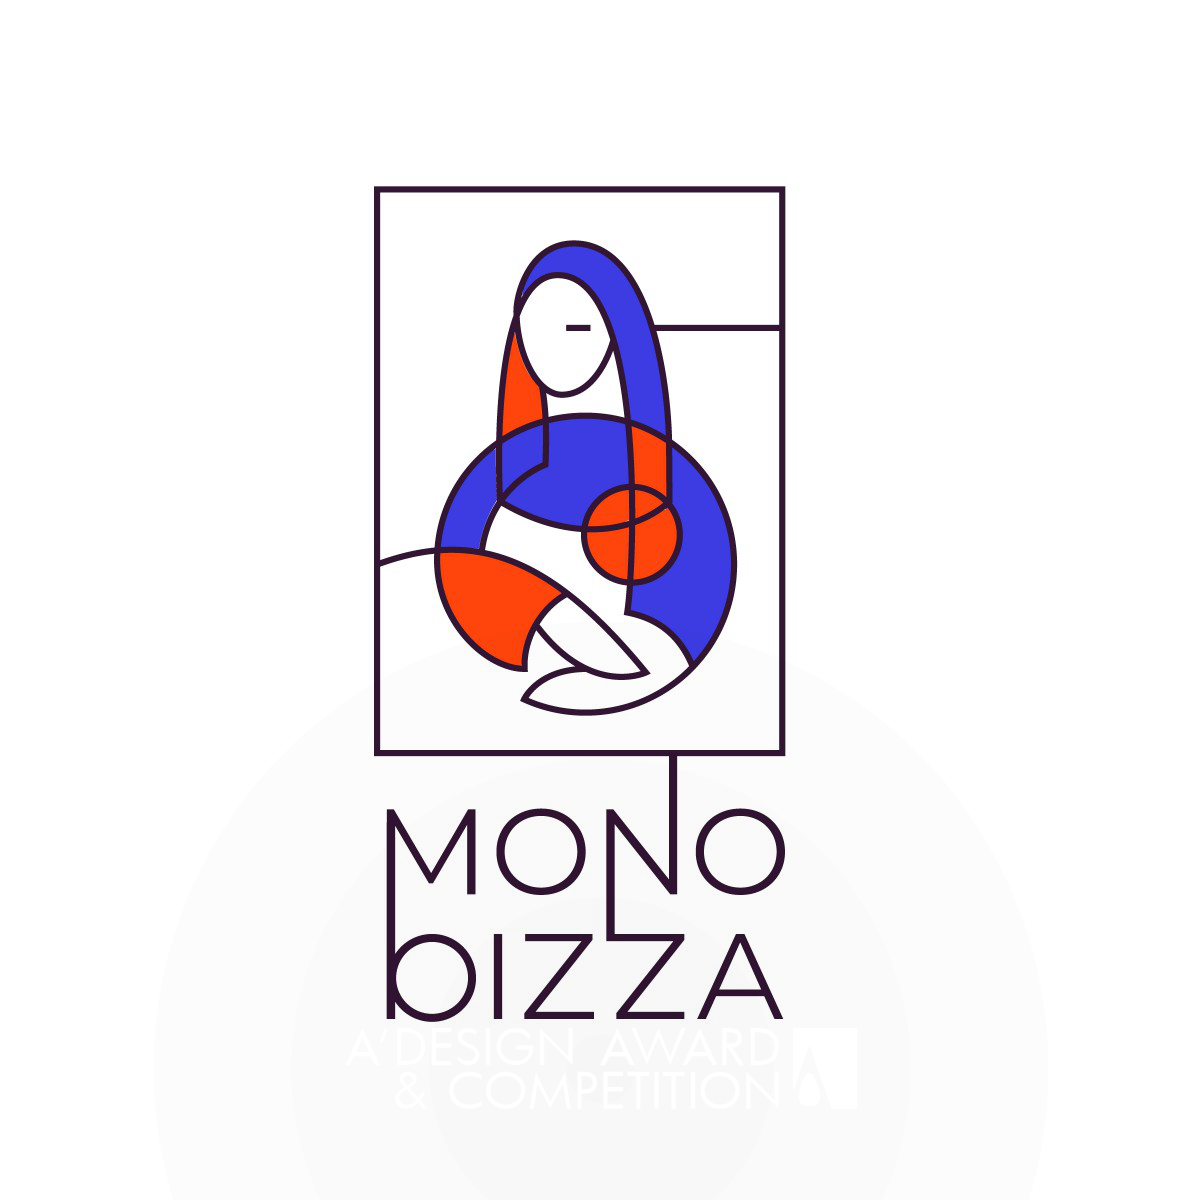 Mono Pizza: Blending Art and Cuisine